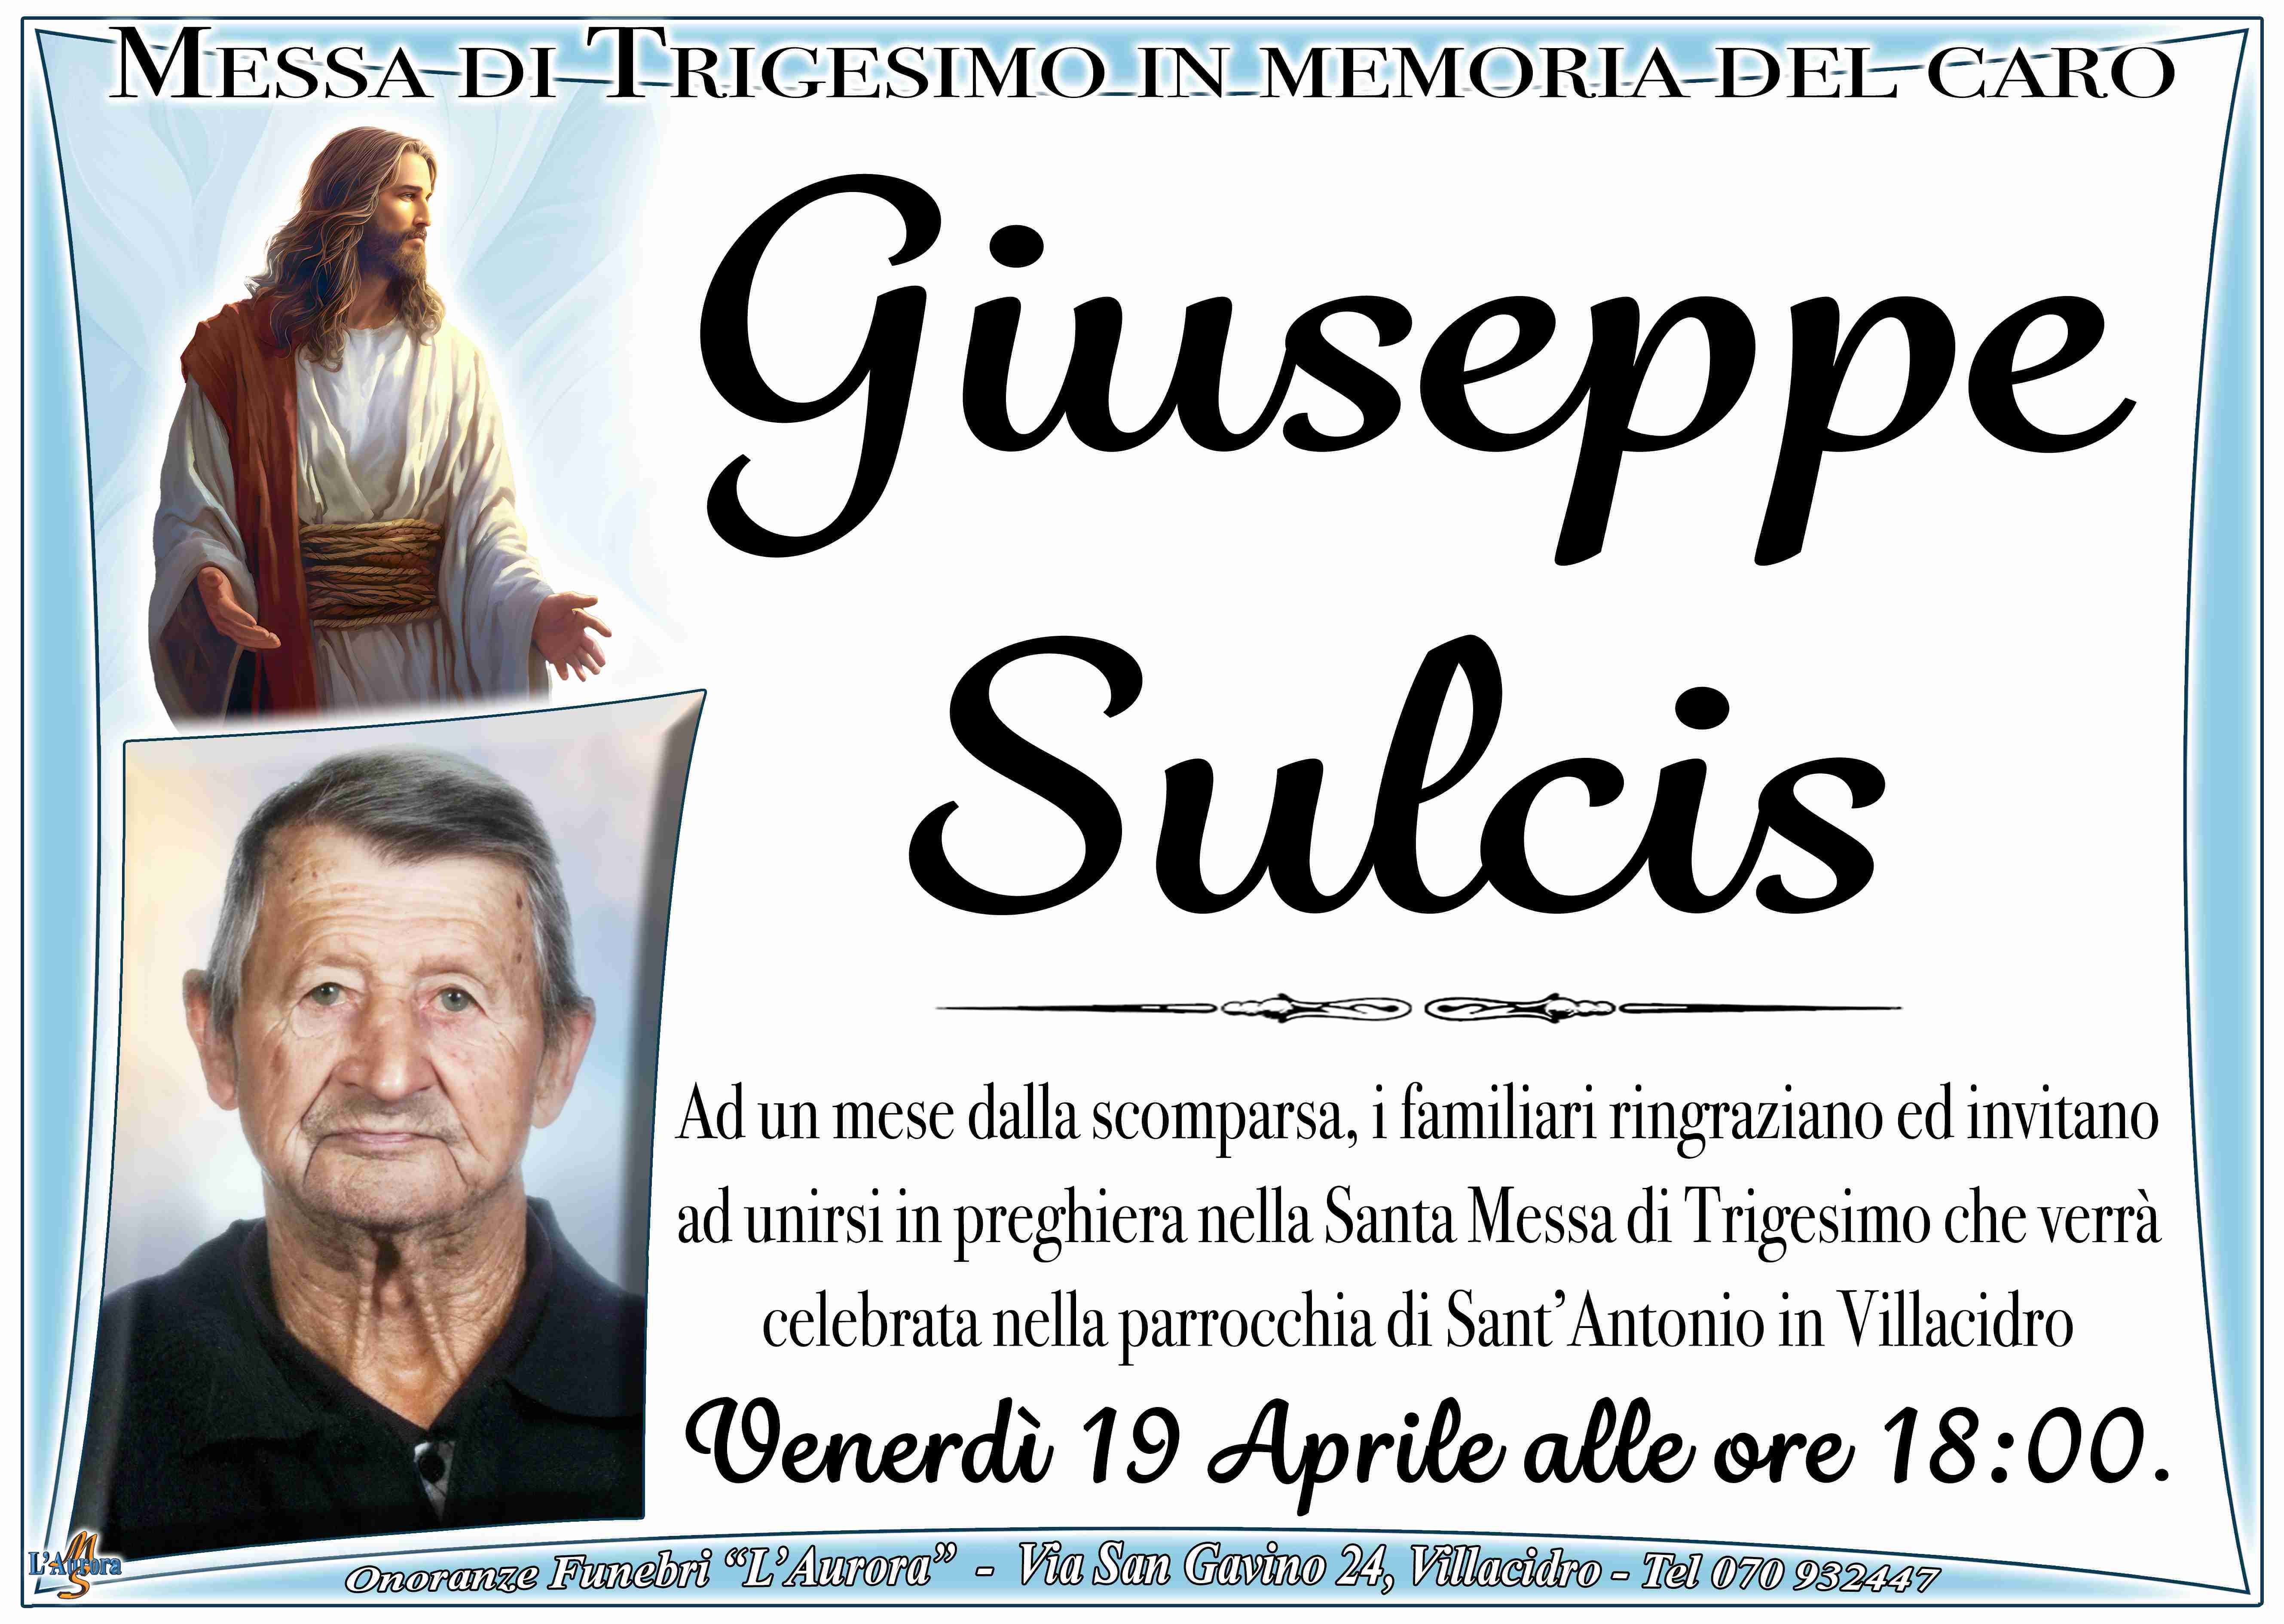 Giuseppe Sulcis